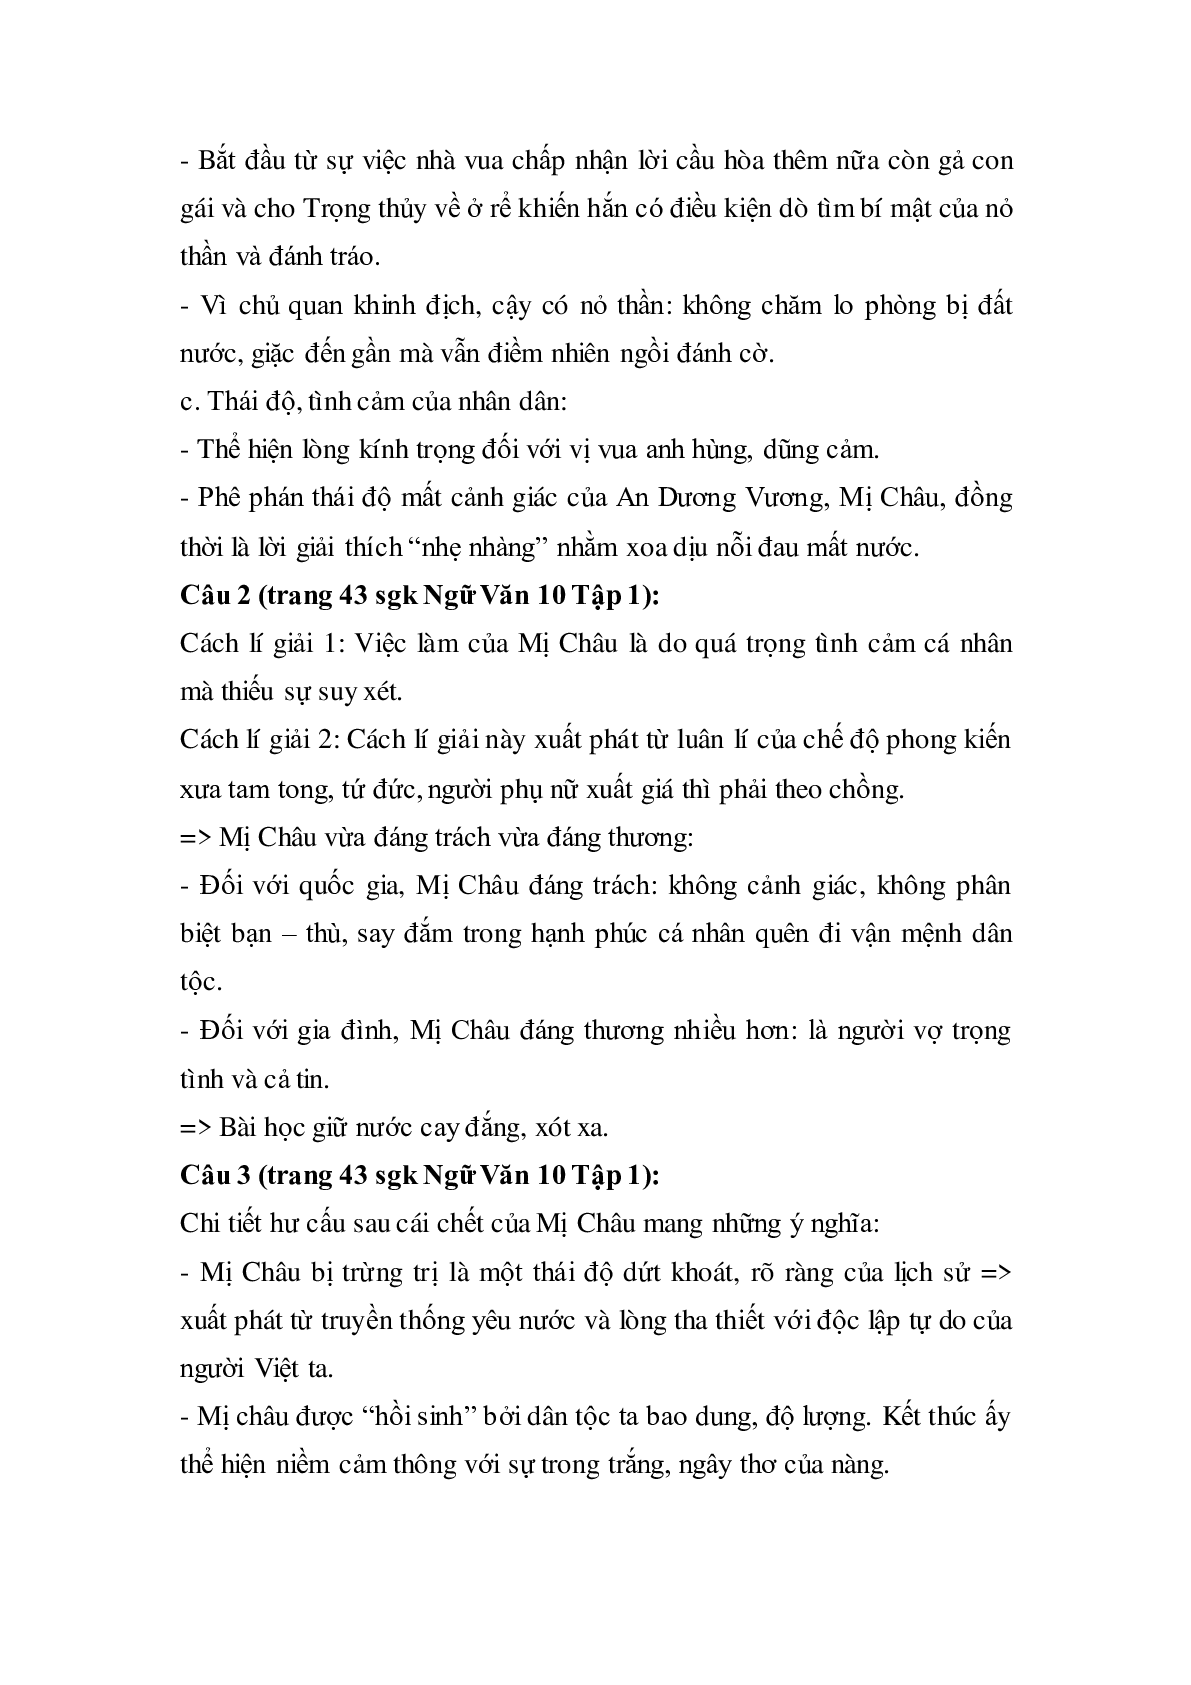 Soạn bài Truyện An Dương Vương và Mị Châu - Trọng Thủy - ngắn nhất Soạn văn 10 (trang 7)